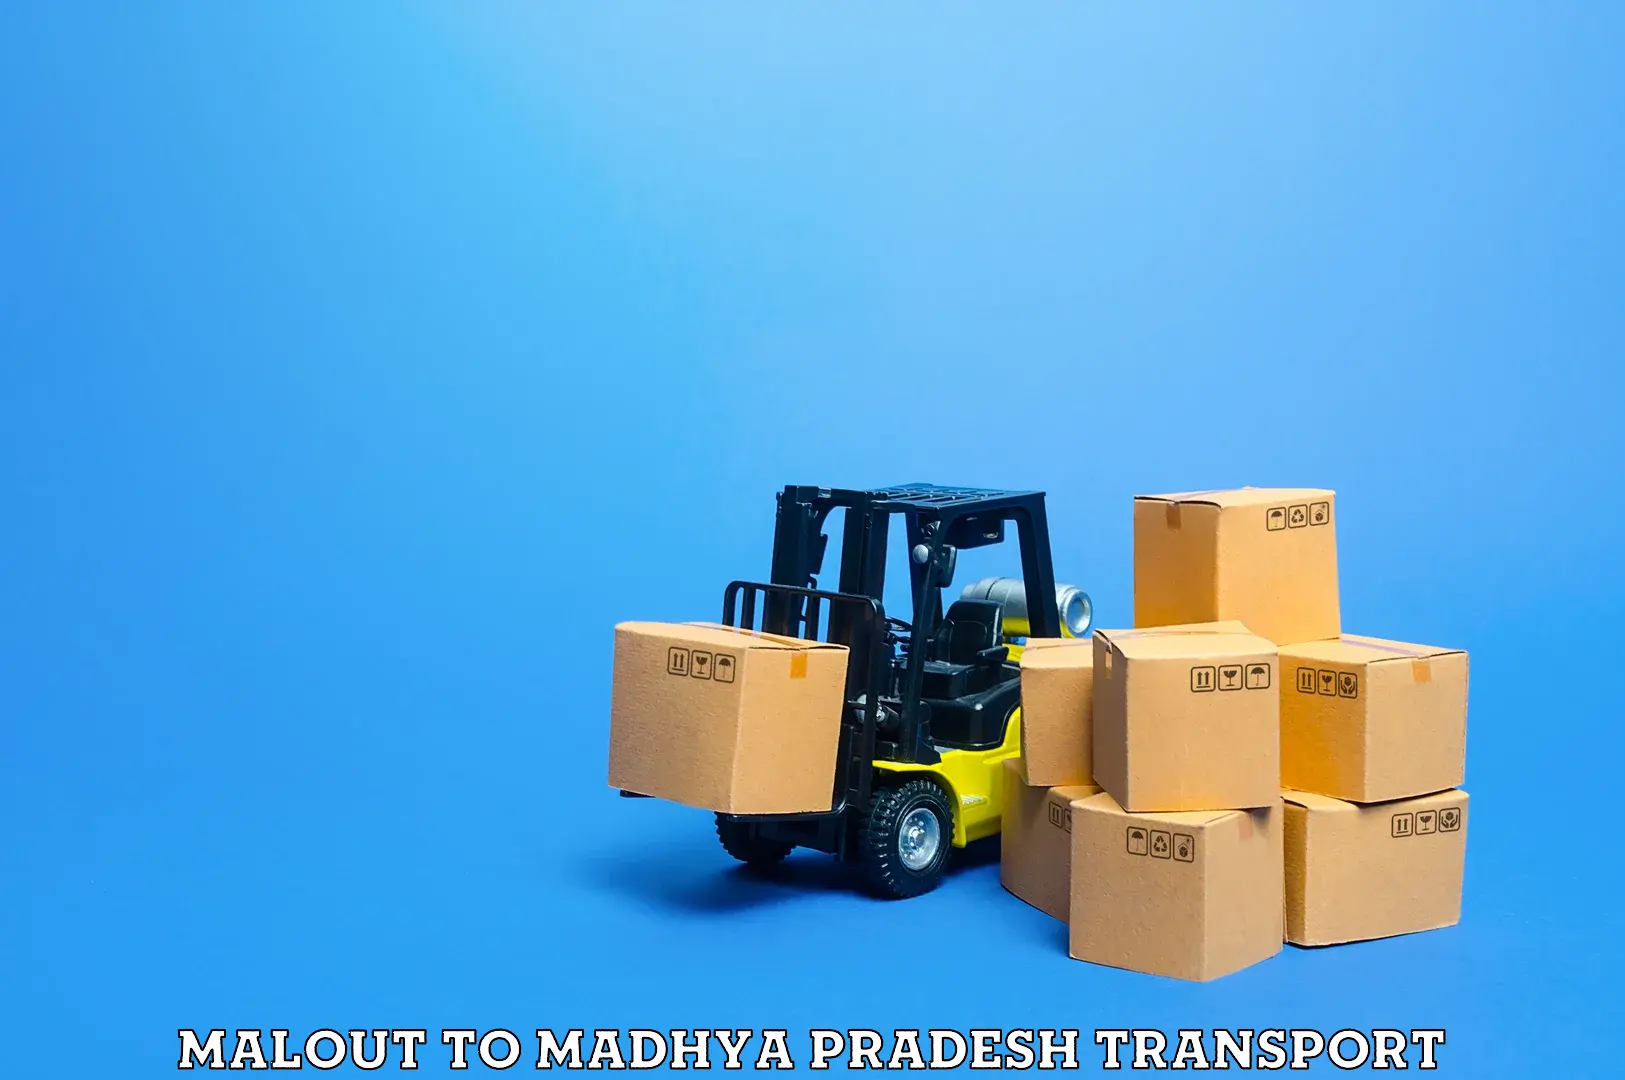 Pick up transport service Malout to Niwari